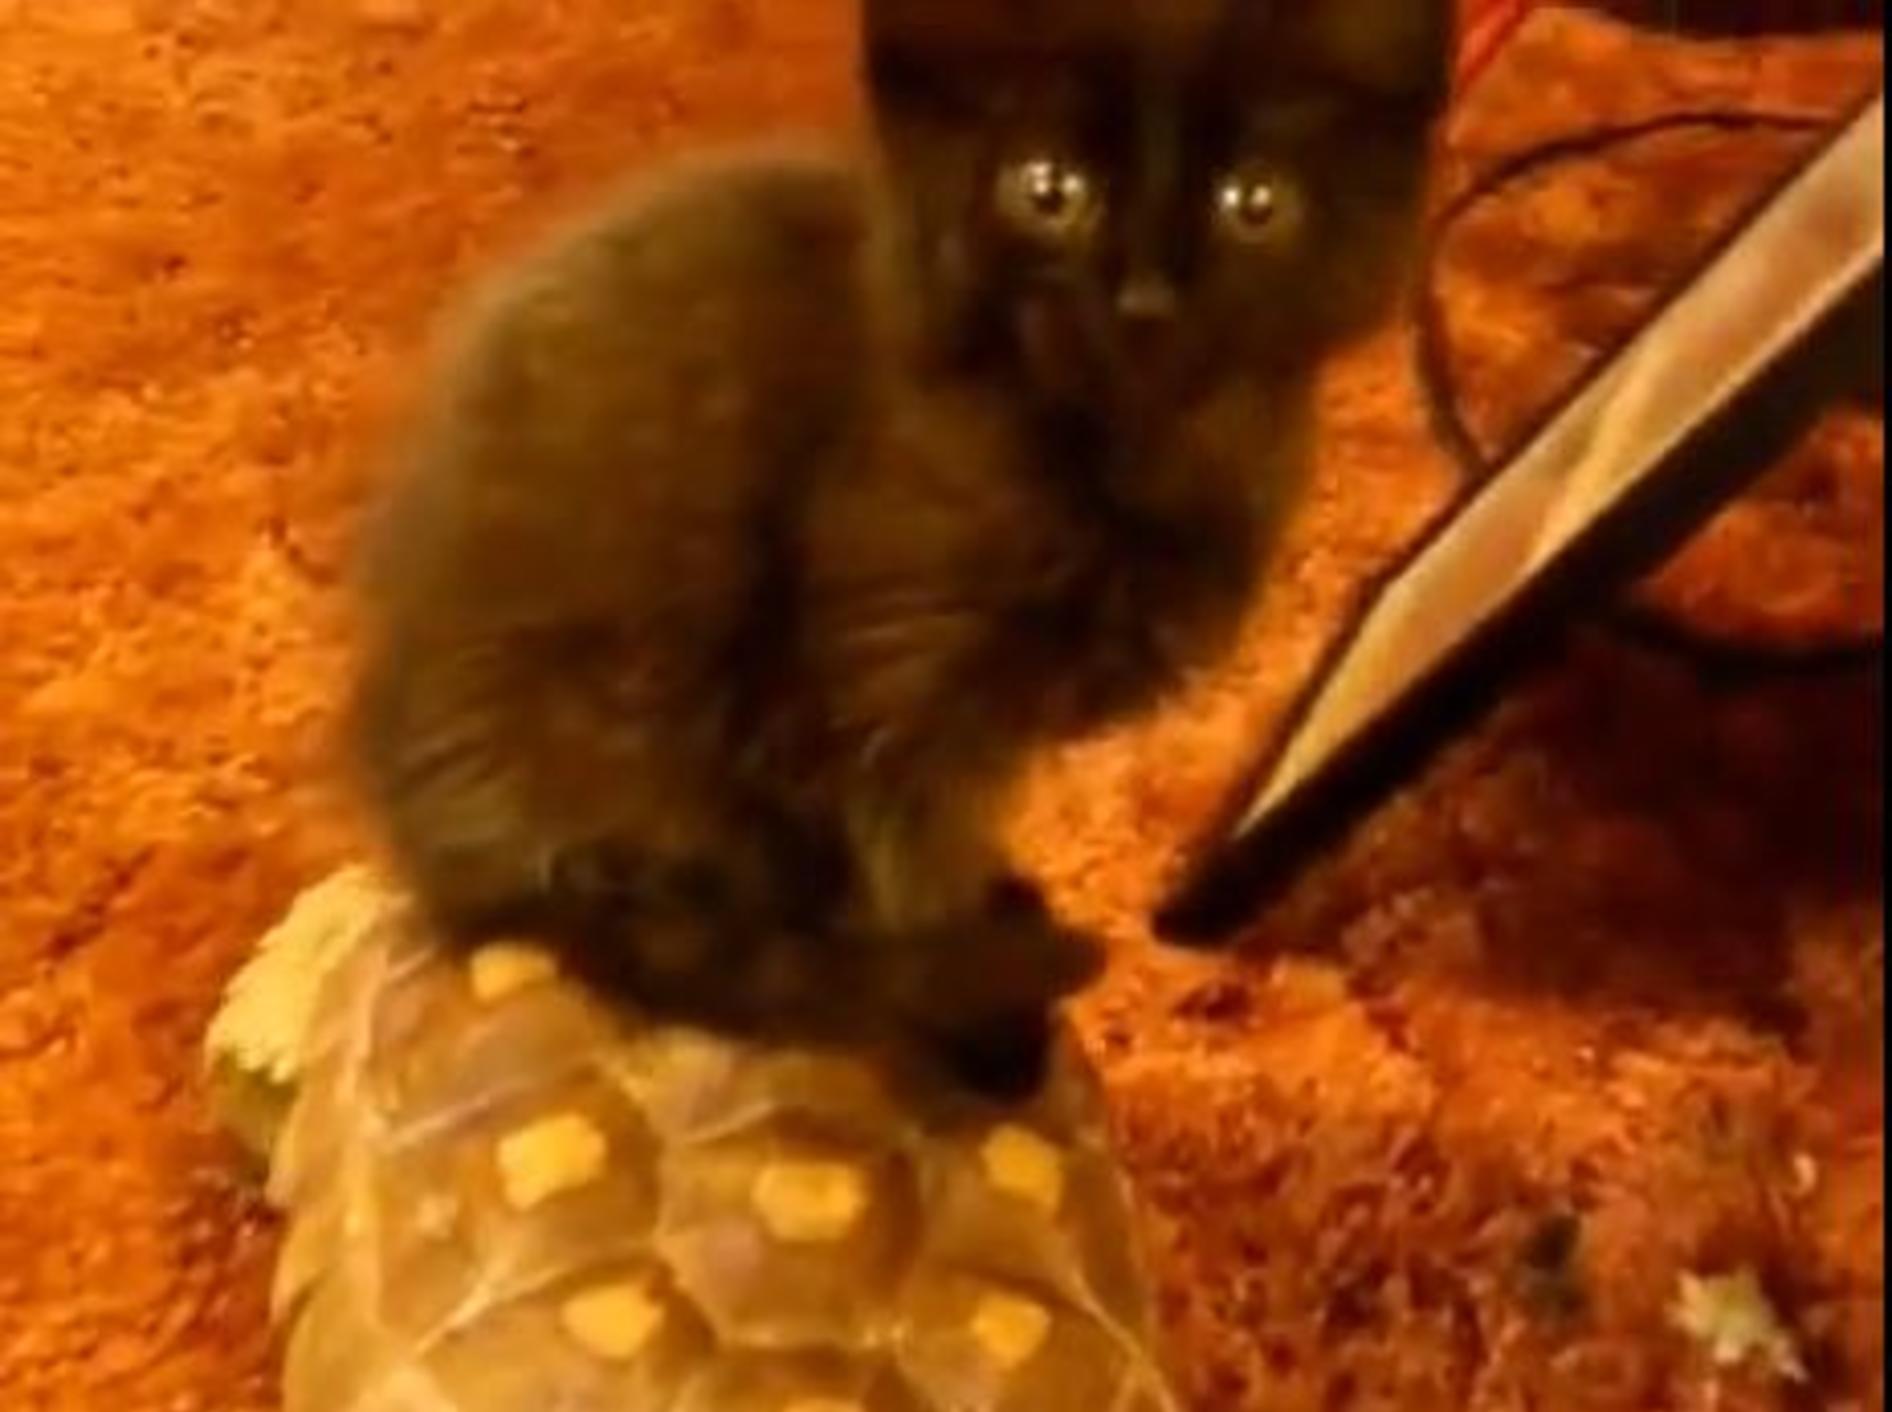 Hopplahopp: Bezaubernde Katze reitet Schildkröte — Bild: Youtube / cerino68